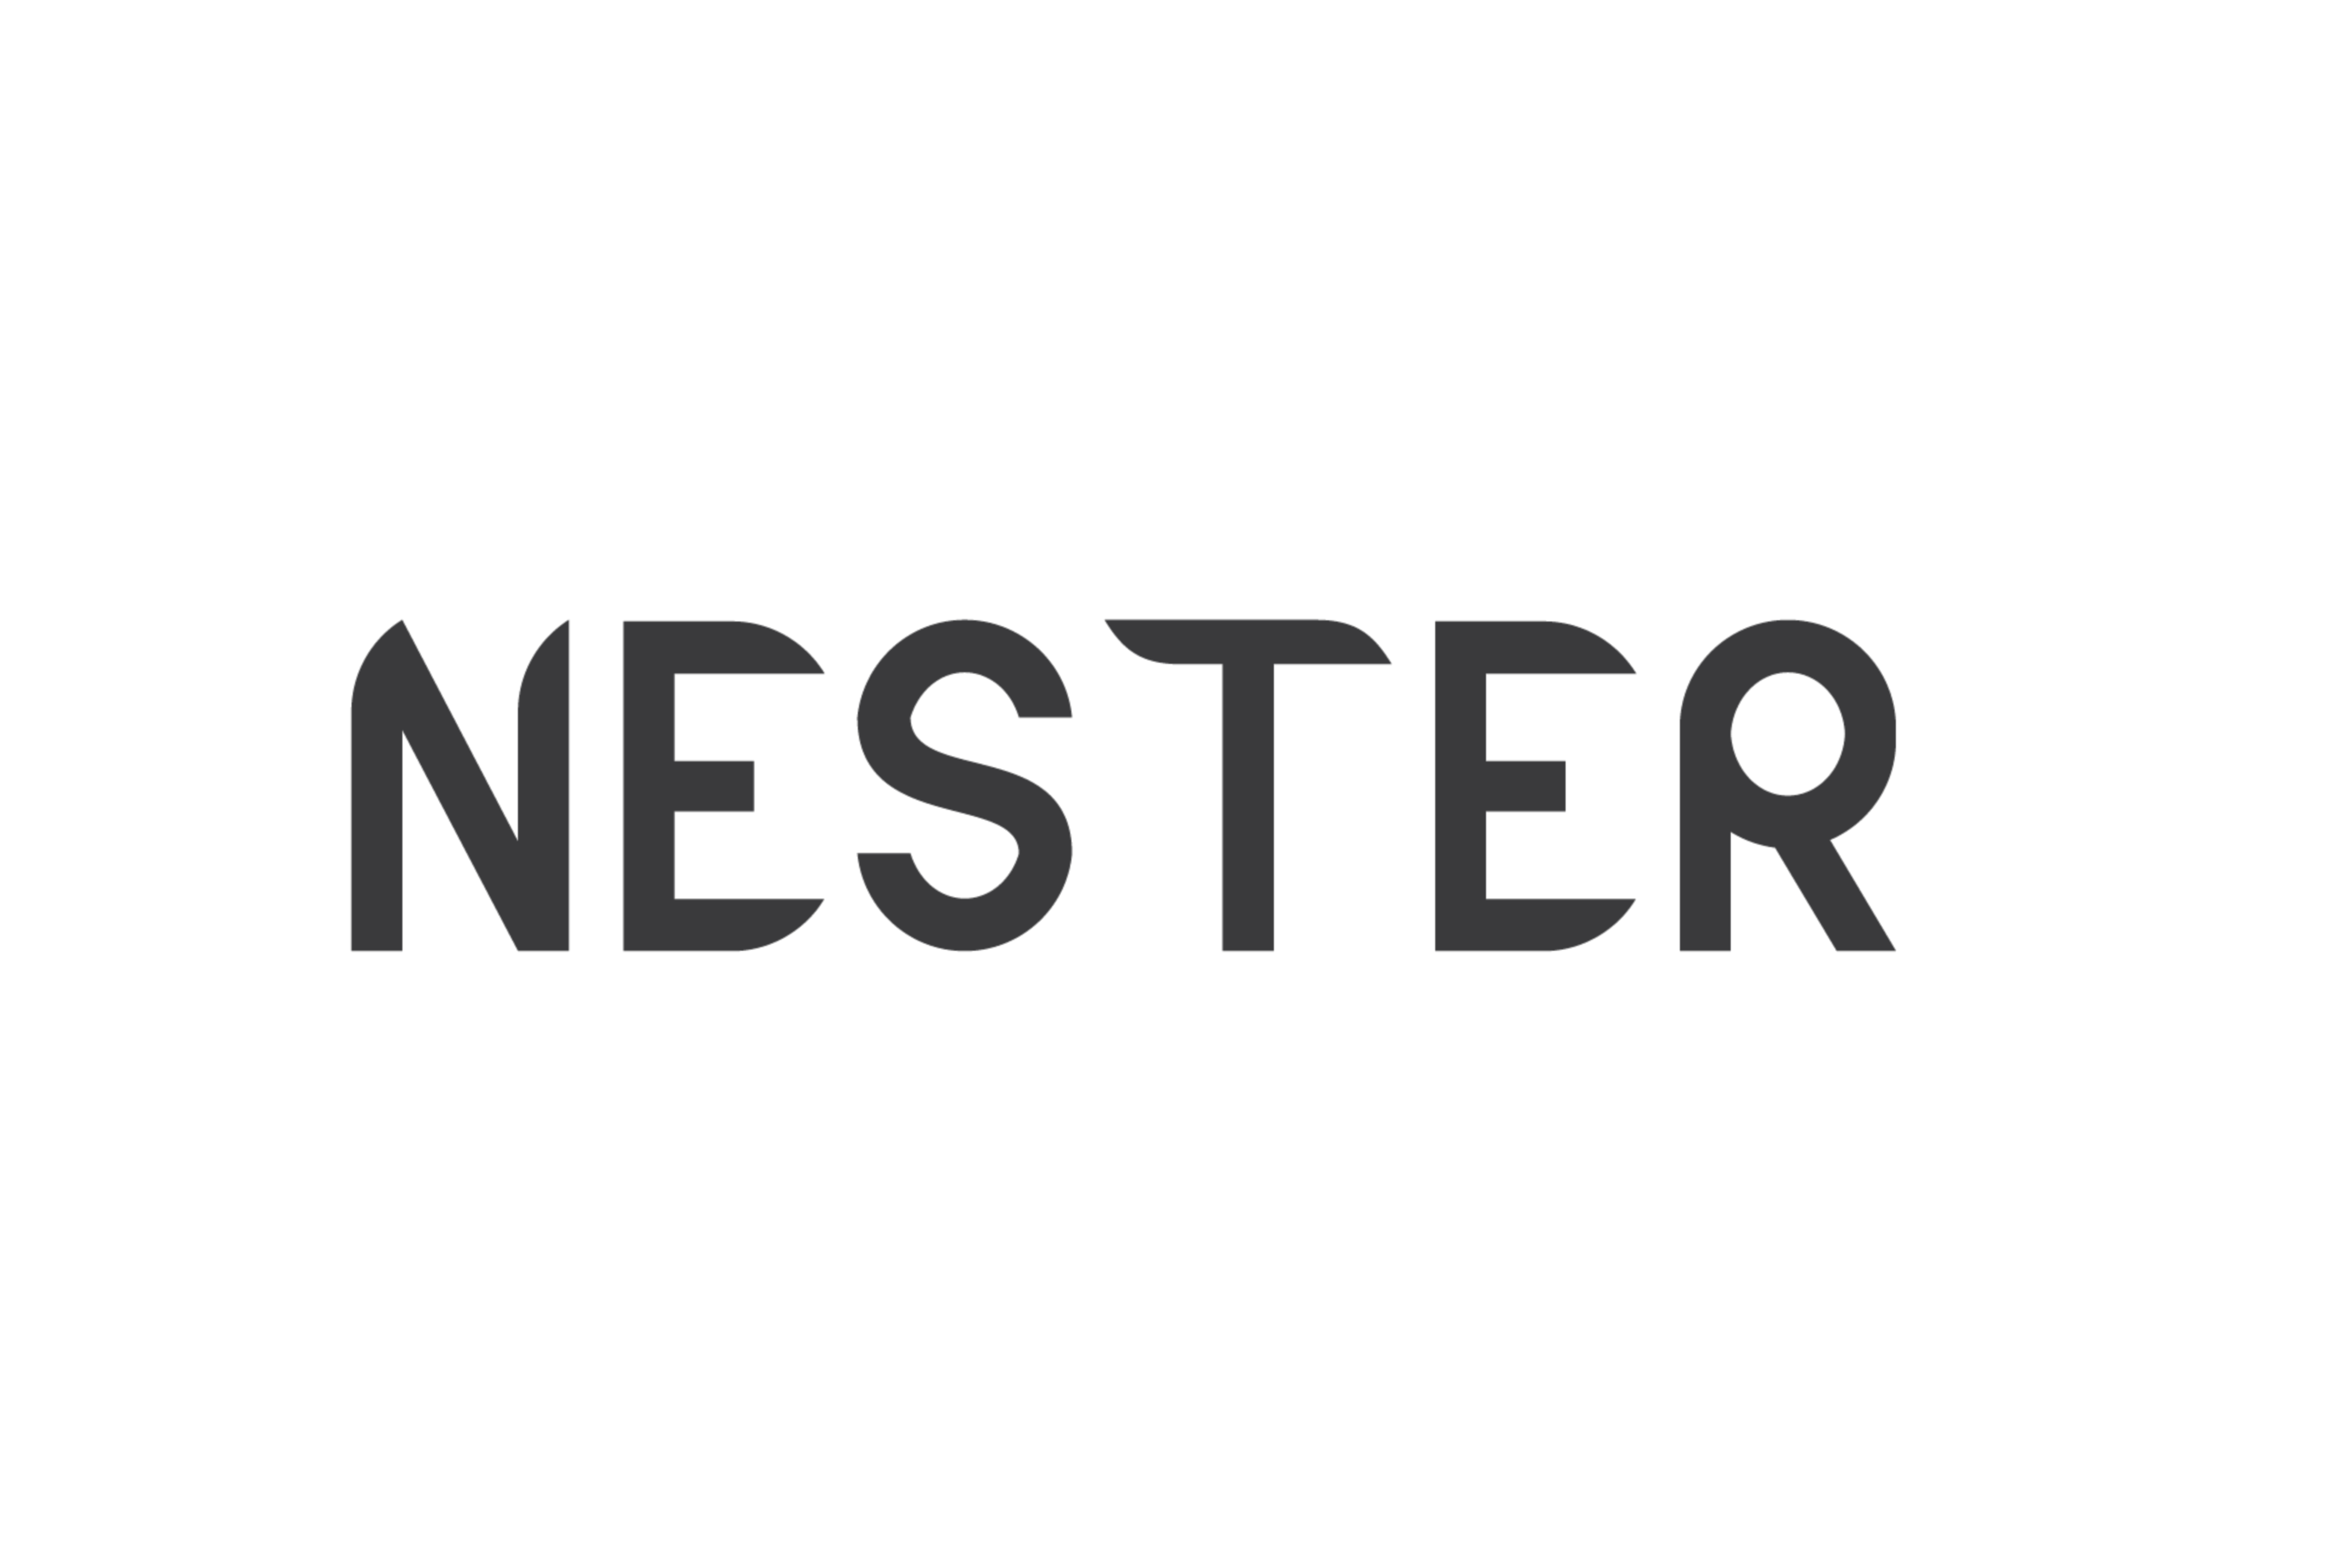 Nester Logo